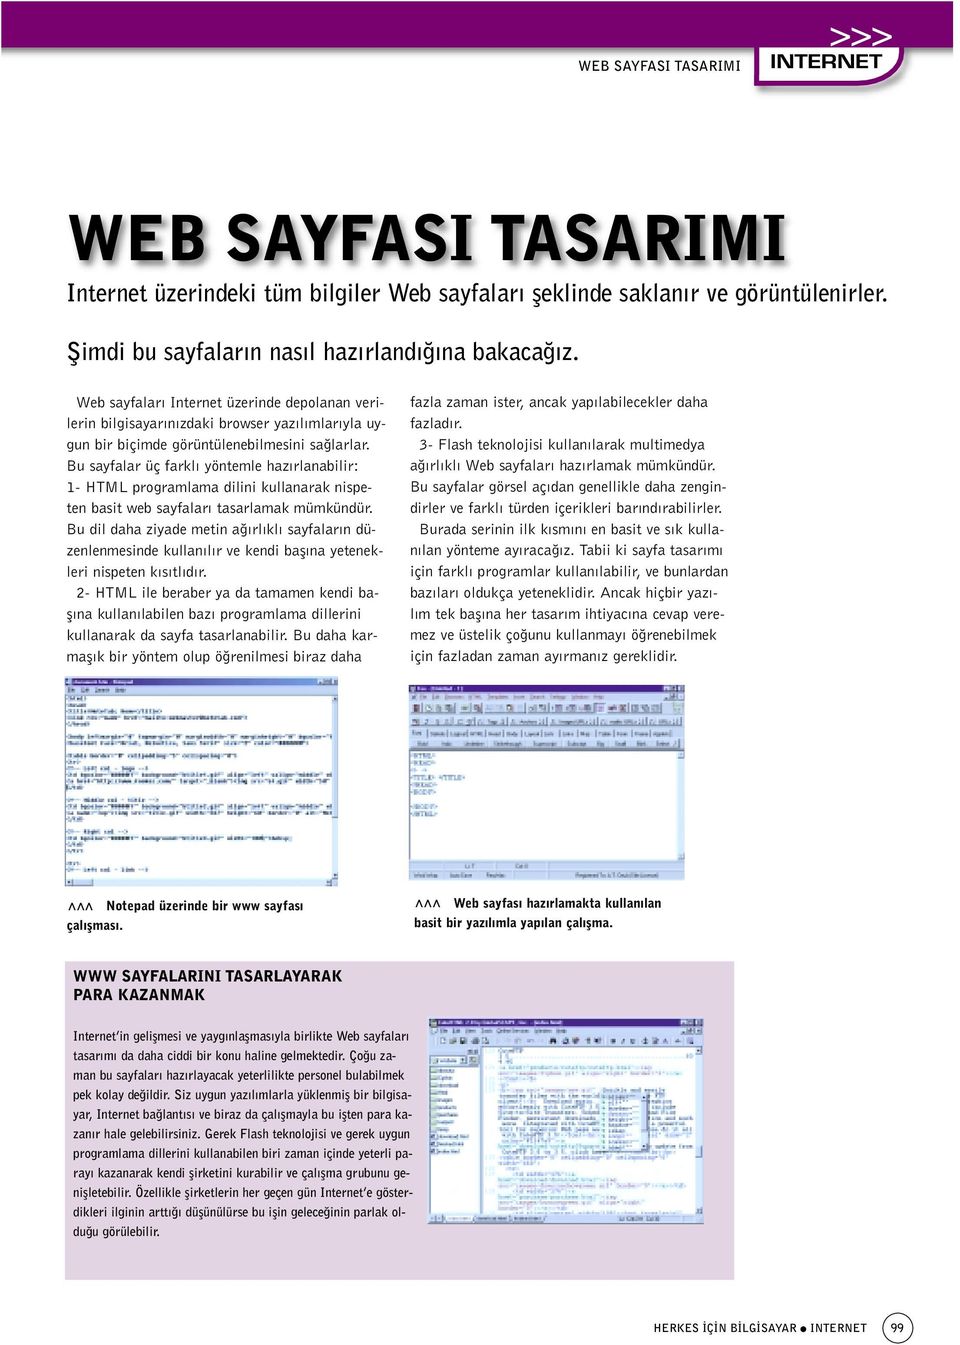 Bu sayfalar üç farkl yöntemle haz rlanabilir: 1- HTML programlama dilini kullanarak nispeten basit web sayfalar tasarlamak mümkündür.